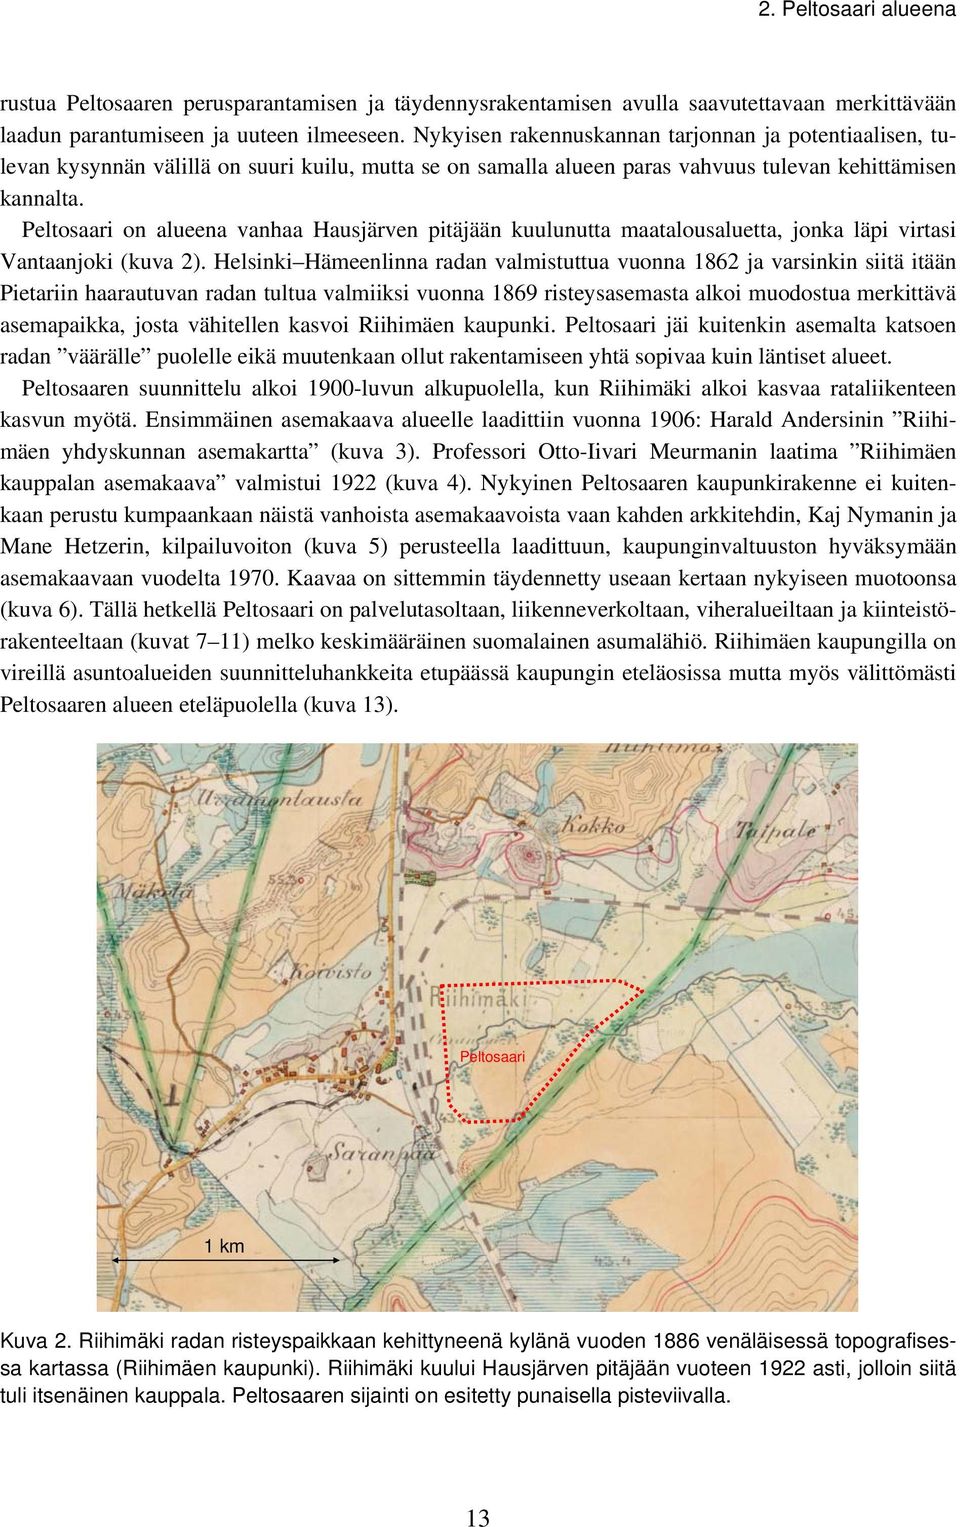 Peltosaari on alueena vanhaa Hausjärven pitäjään kuulunutta maatalousaluetta, jonka läpi virtasi Vantaanjoki (kuva 2).